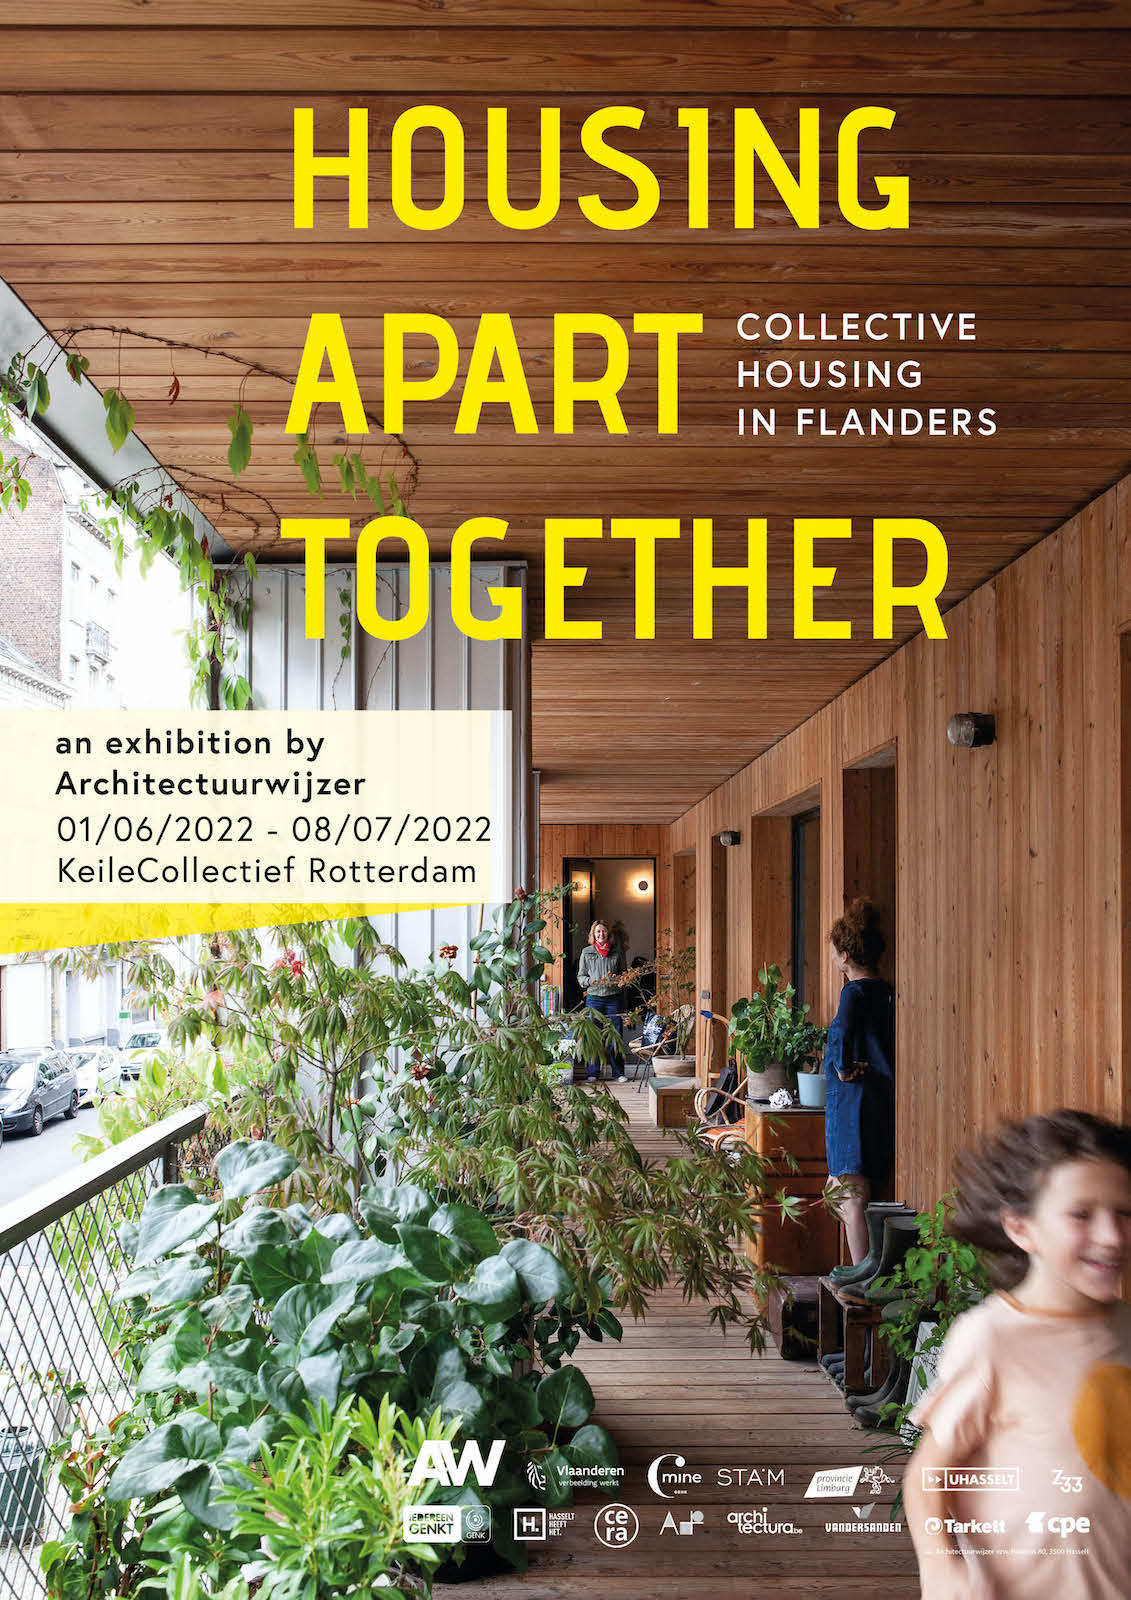 Housing Apart Together - Collectieve woonvormen in Vlaanderen - Een tentoonstelling van Architectuurwijzer - 10/10/2019 - 05/01/2020 C-mine Genk - 19/01/2020 - 03/05/2020 STAM Gent